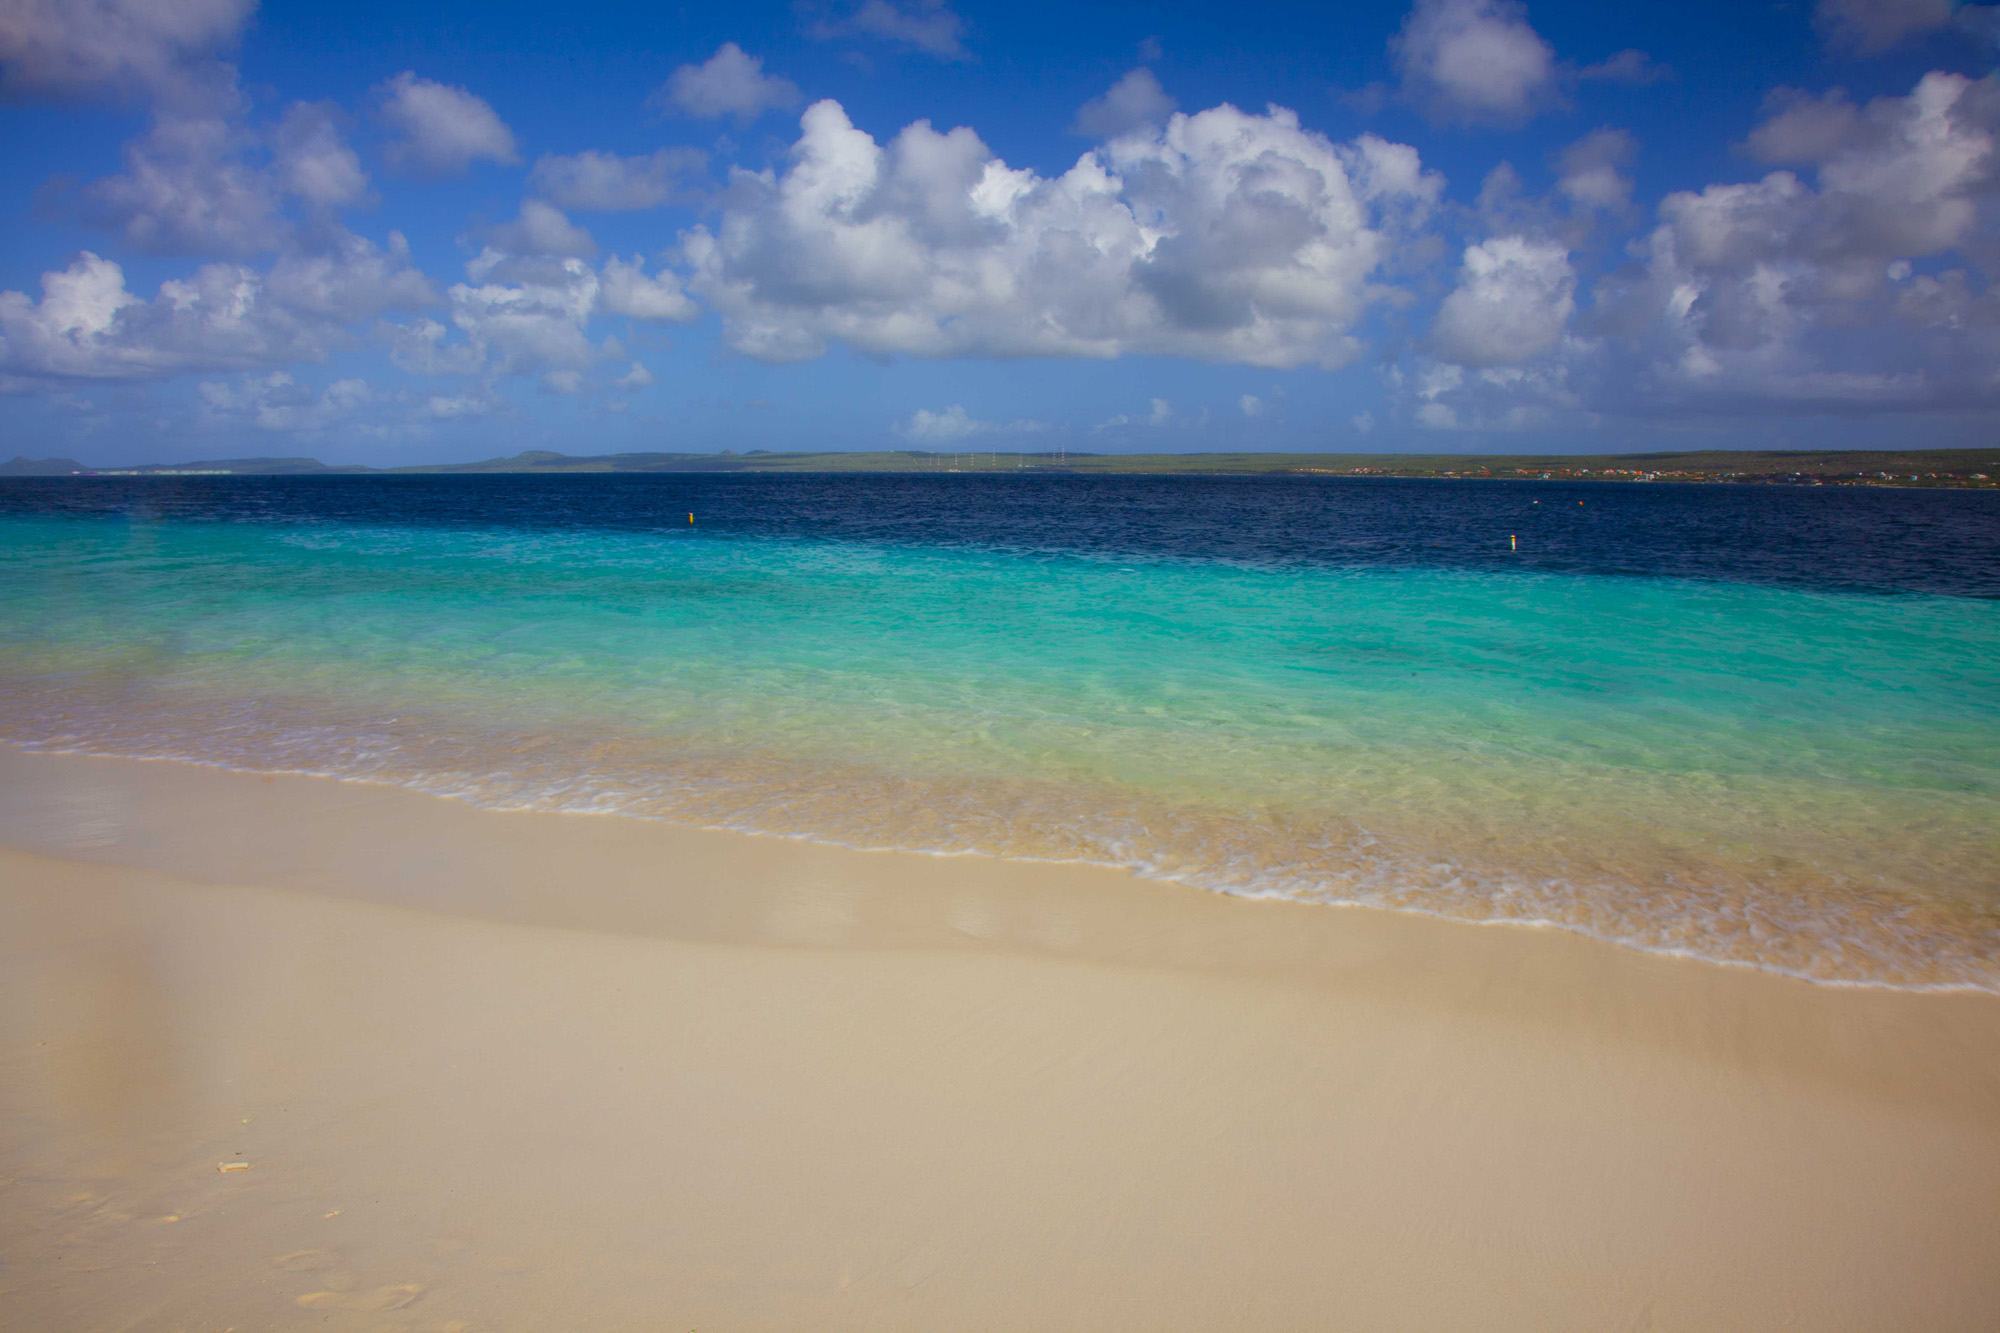 Klein Bonaire, Bonaire, Caribbean Sea photographed by Tom Till